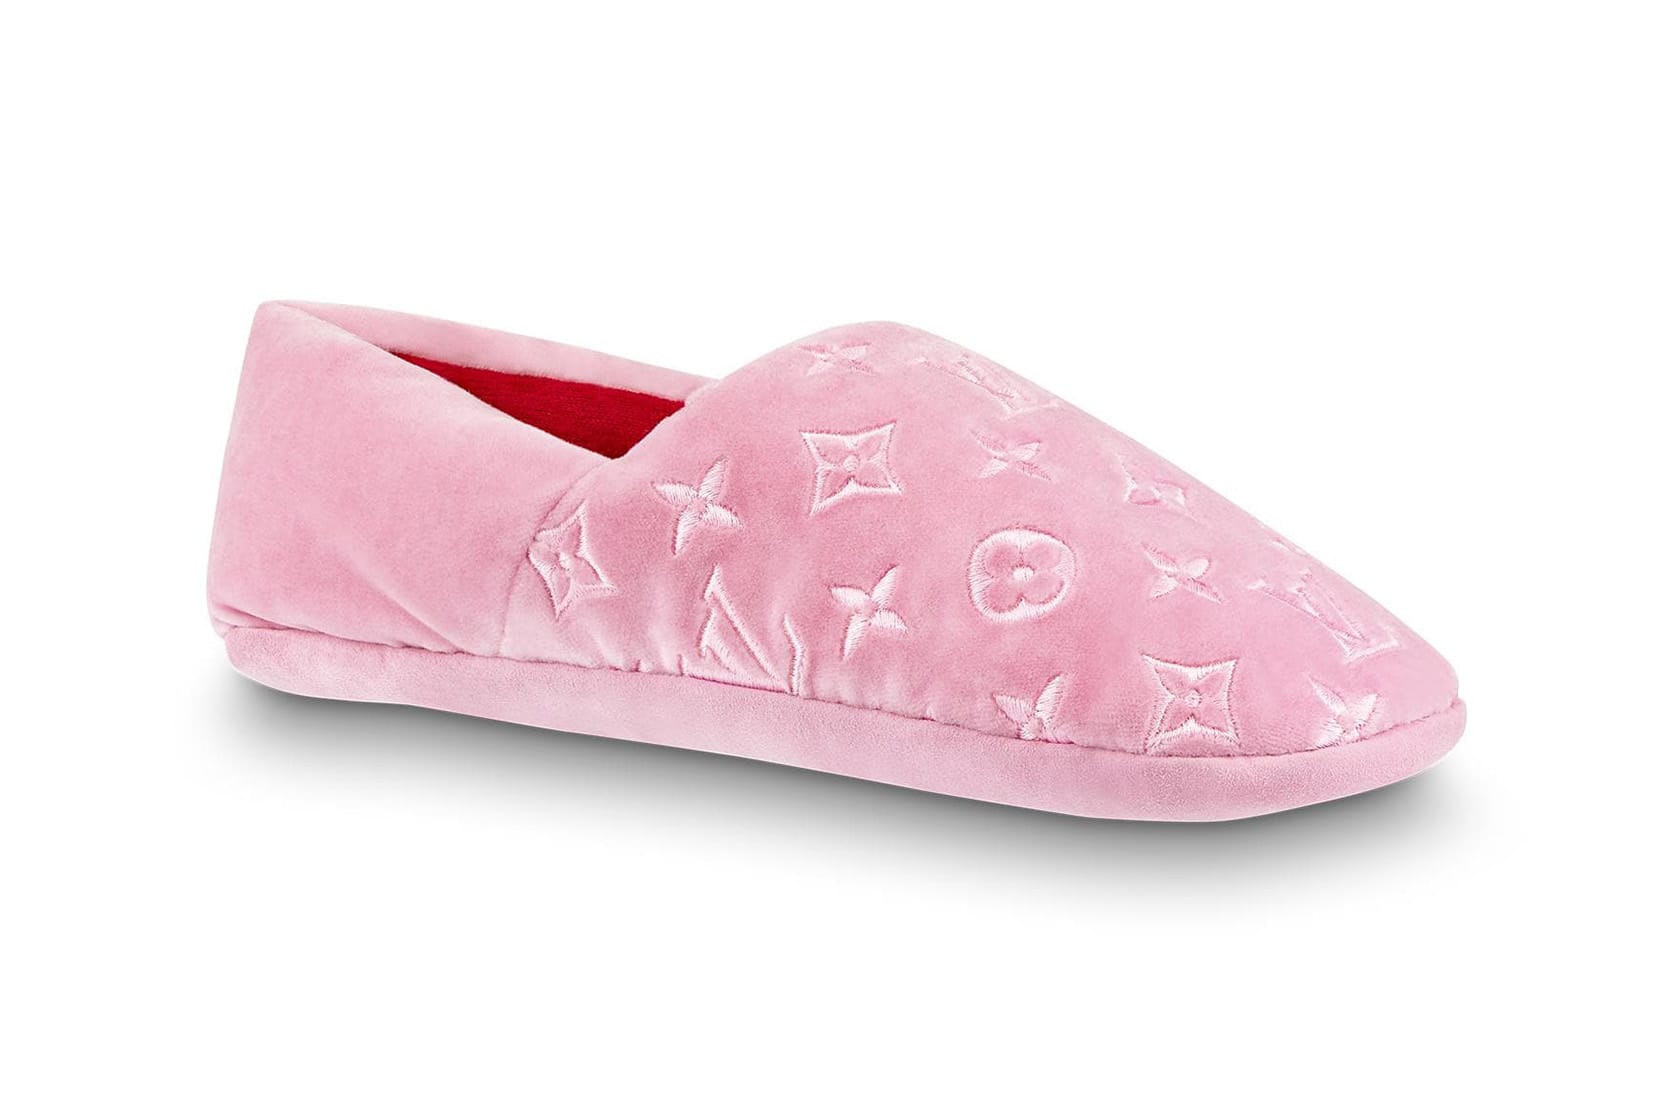 lv slippers